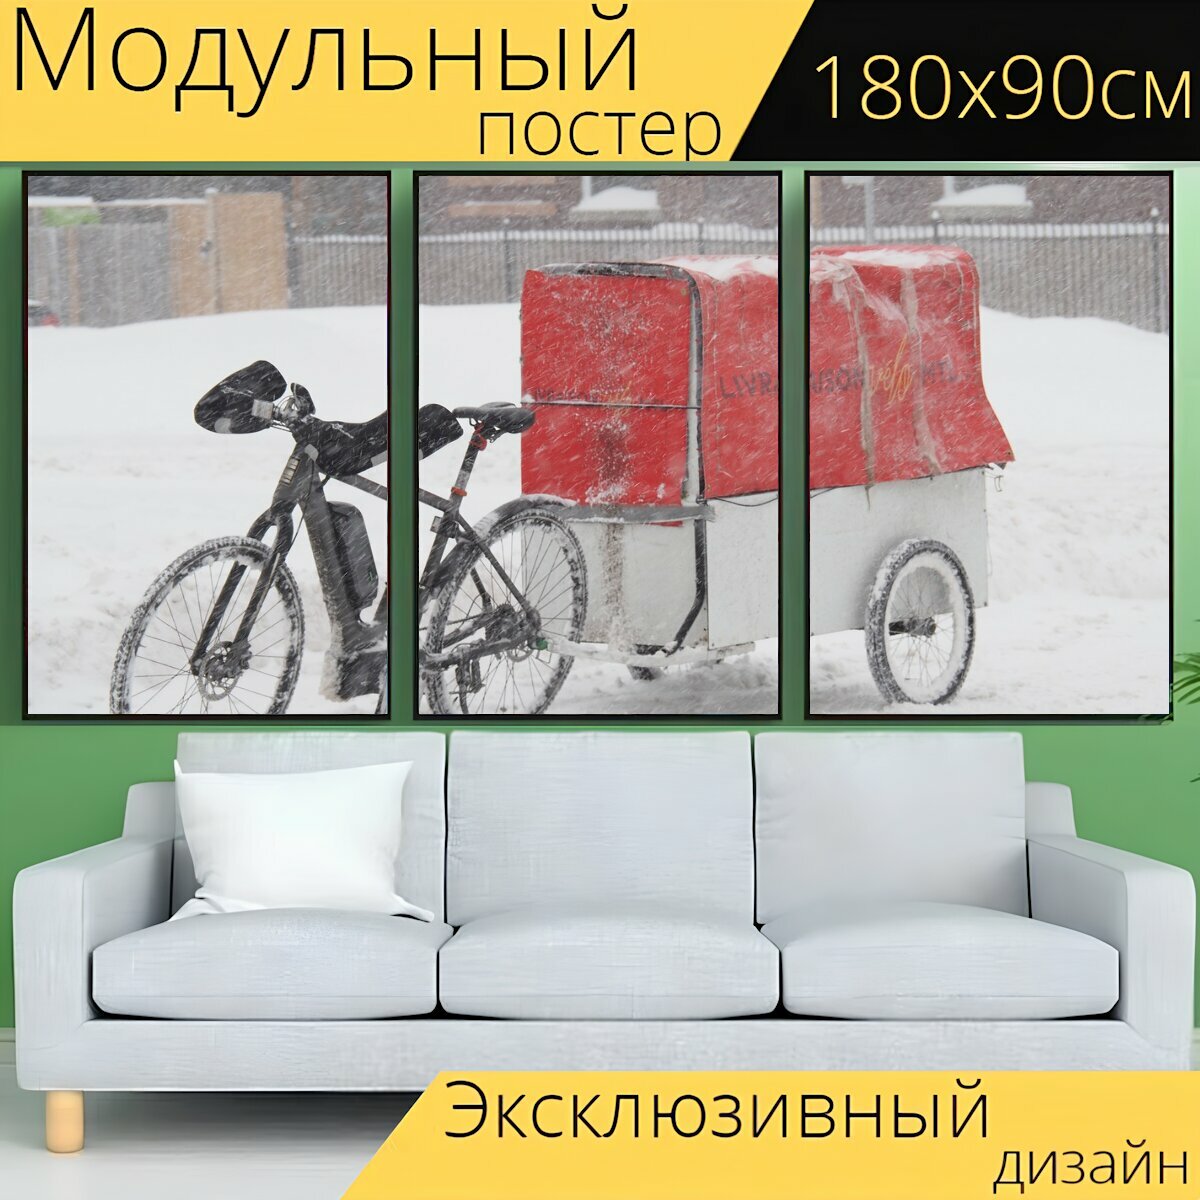 Модульный постер "Велосипед, транспорт, товар" 180 x 90 см. для интерьера